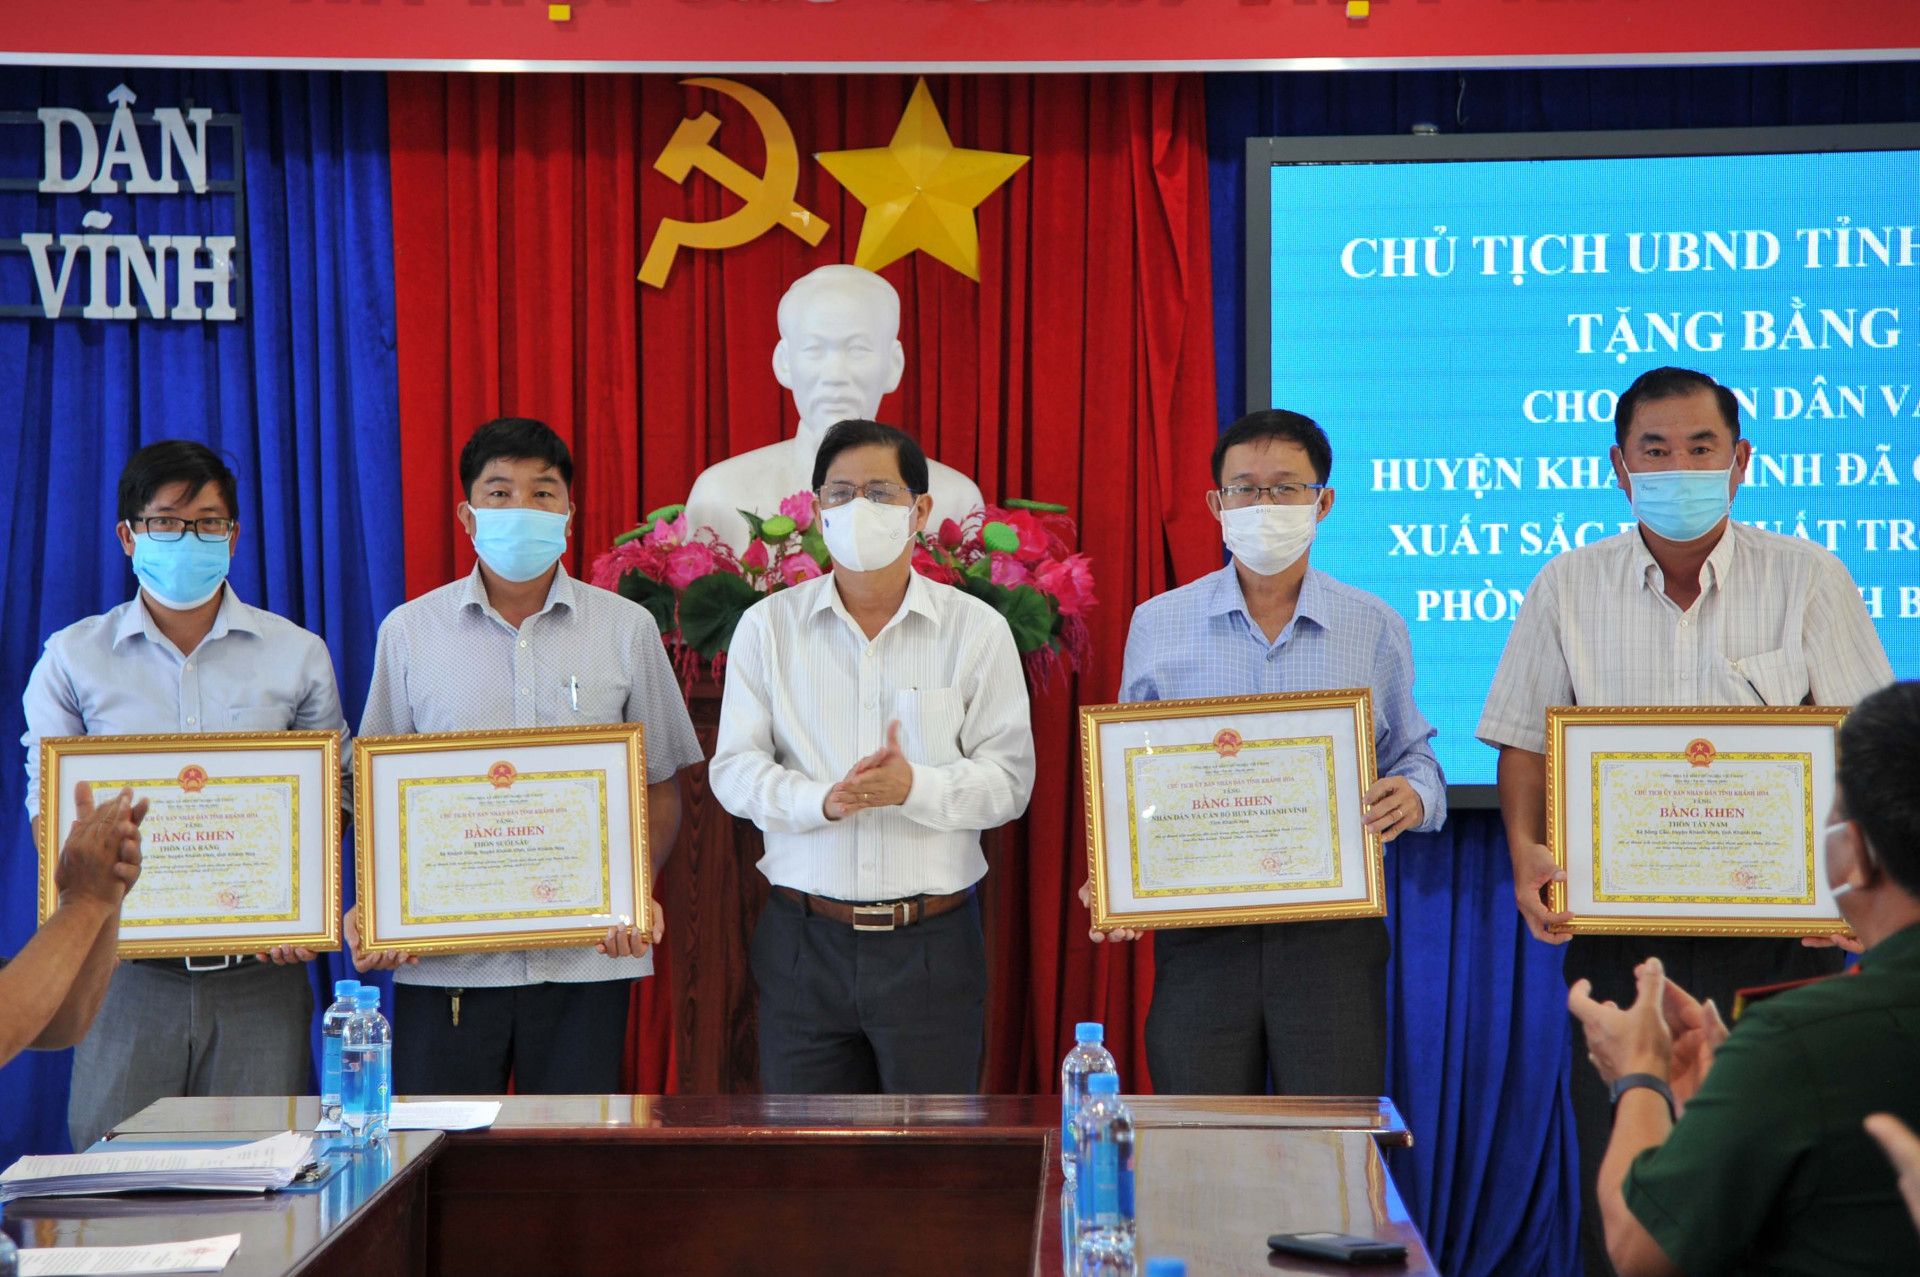 Chủ tịch UBND tỉnh Nguyễn Tấn Tuân khen thưởng huyện Khánh Vĩnh cùng các địa phương thuộc huyện.